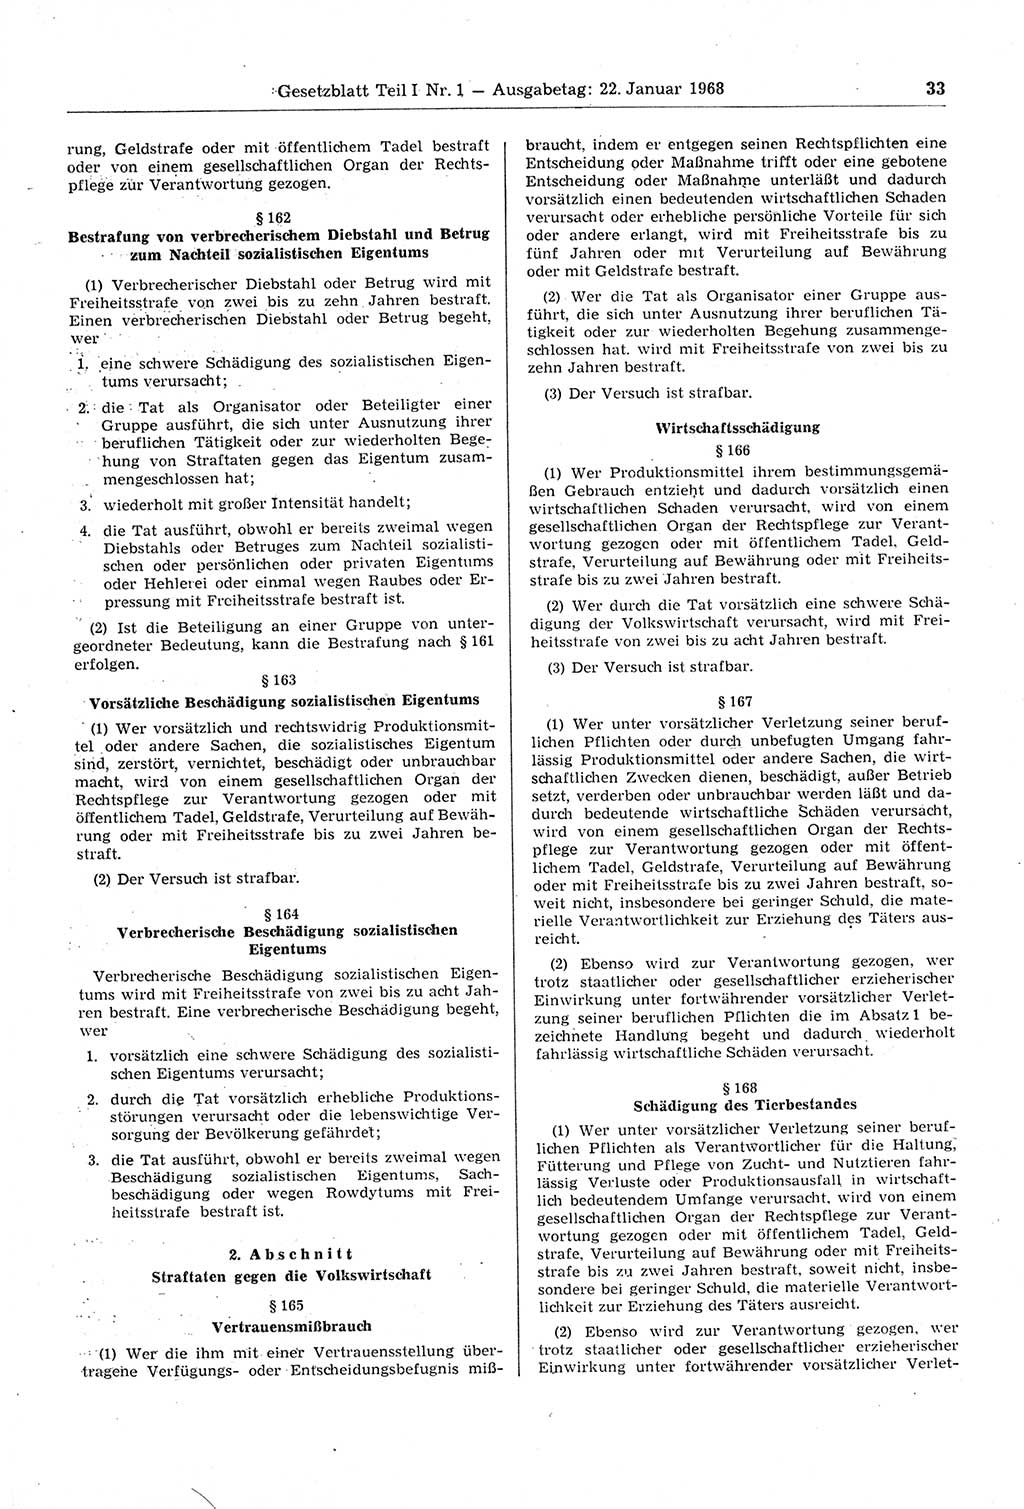 Gesetzblatt (GBl.) der Deutschen Demokratischen Republik (DDR) Teil Ⅰ 1968, Seite 33 (GBl. DDR Ⅰ 1968, S. 33)